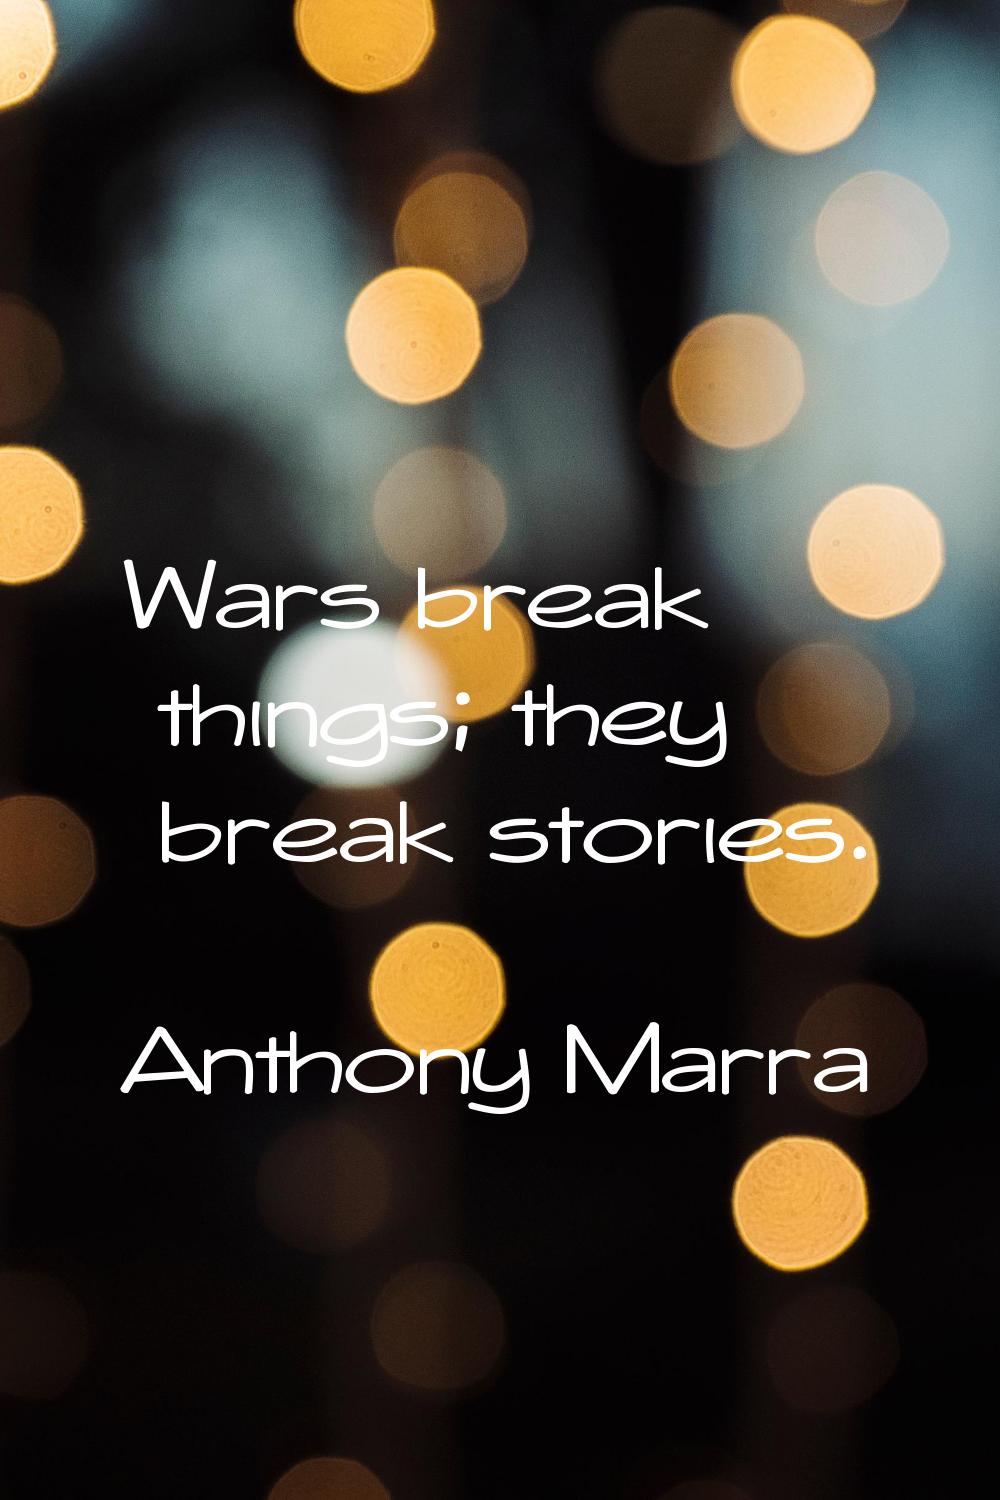 Wars break things; they break stories.